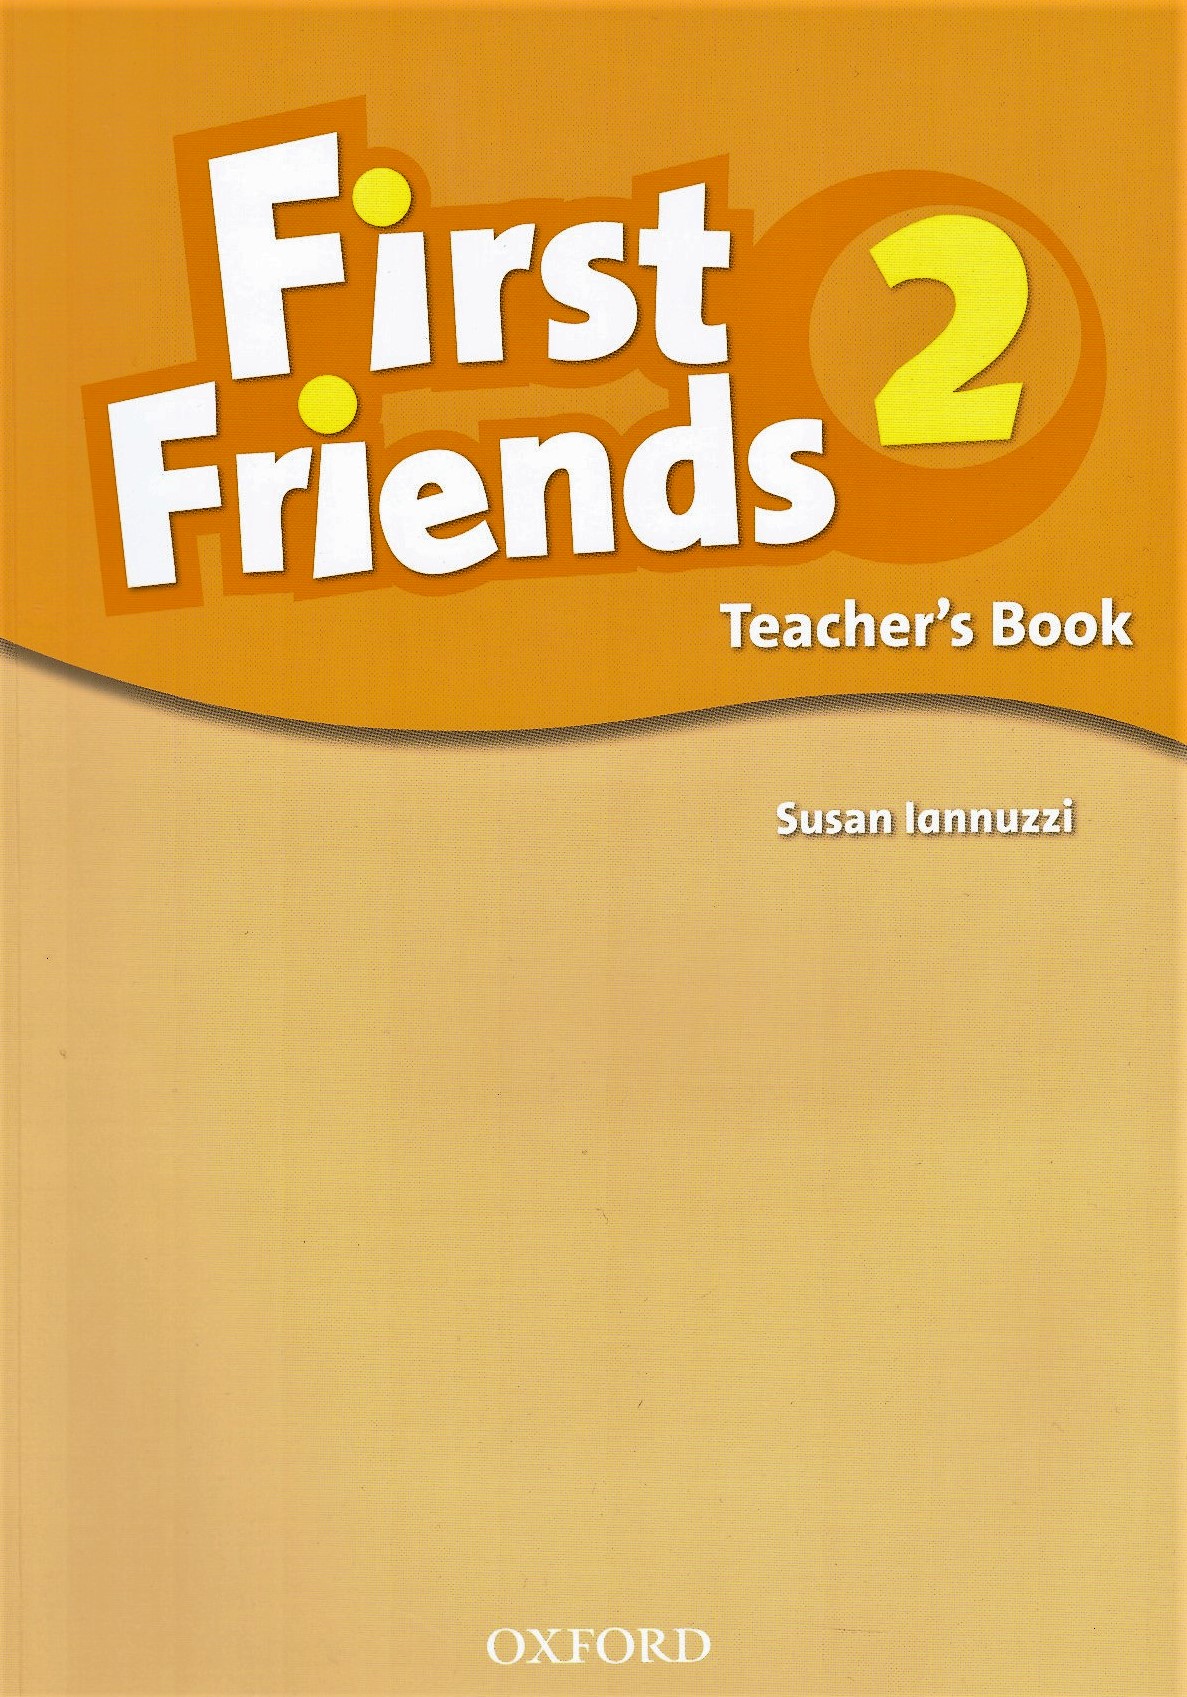 First Friends 2 Teacher's Book / Книга для учителя